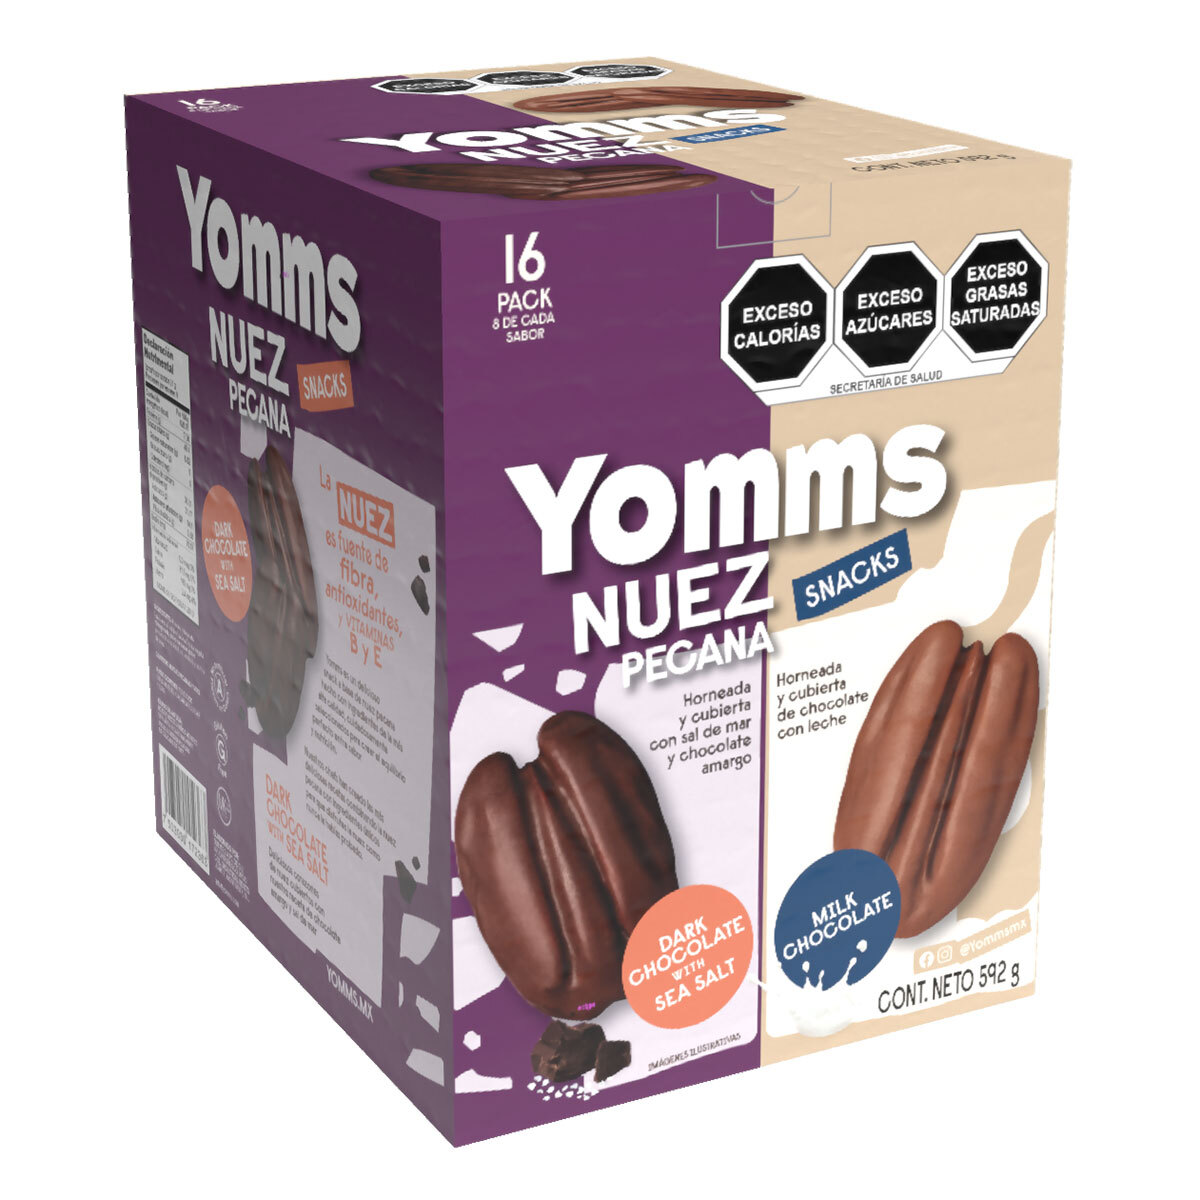 Yomms Snacks de Nuez Pecana con Chocolate 16 pzas de 37 g